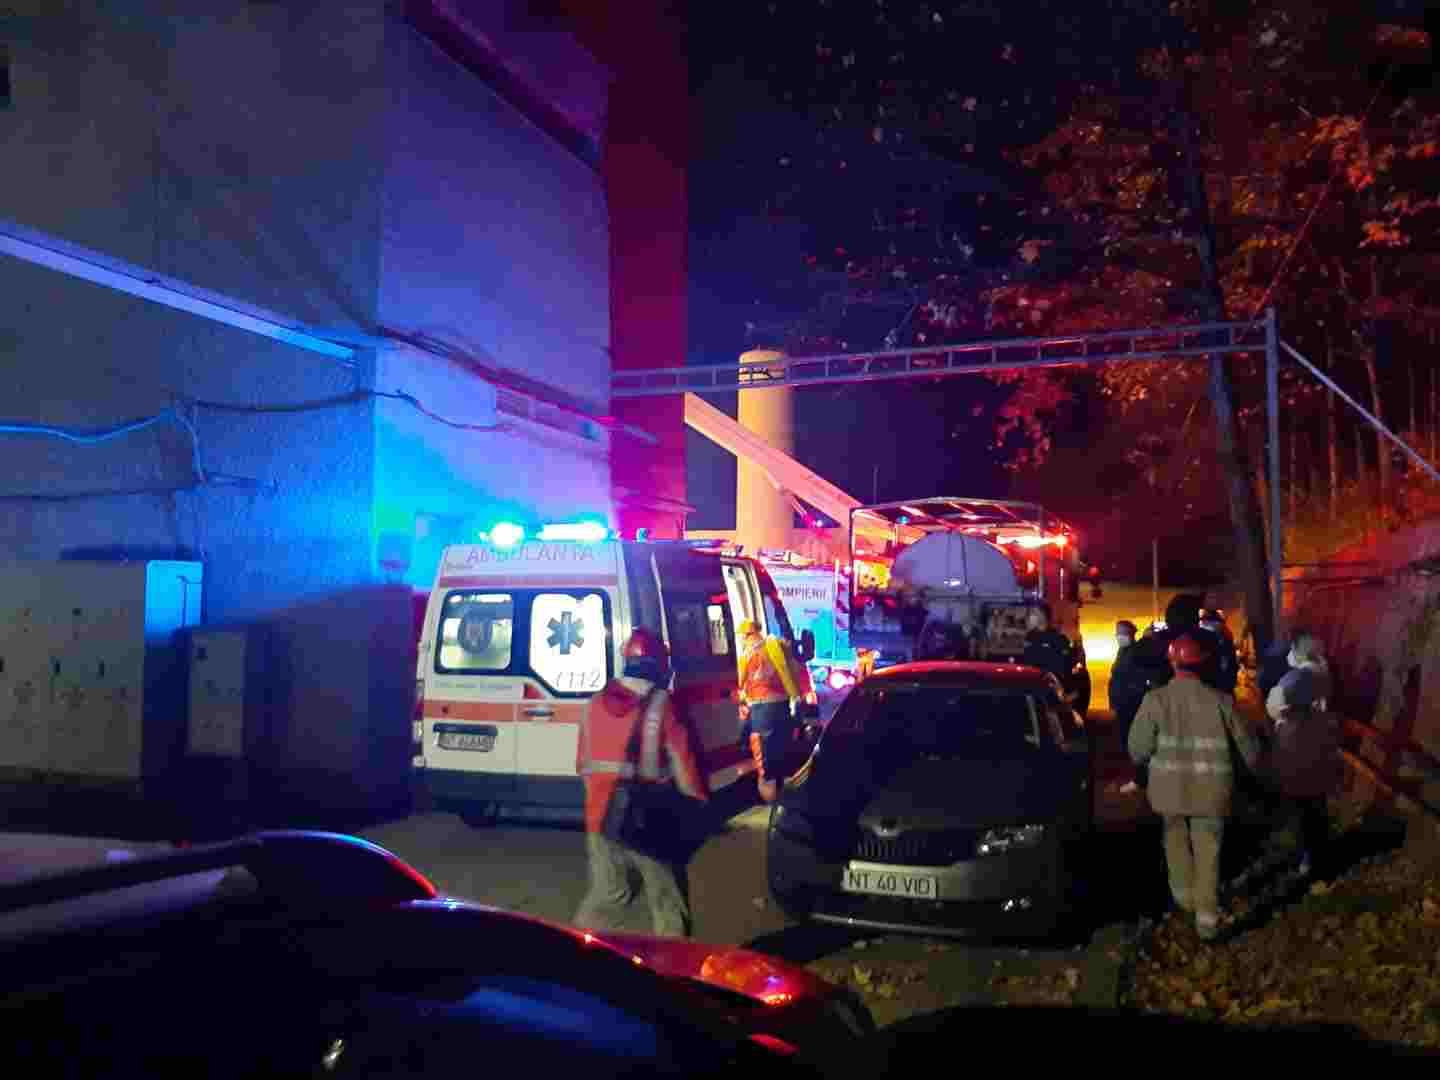  Medicul Cătălin Denciu și o asistentă s-au aruncat în flăcări pentru a salva pacienții din incendiul de la Spitalul Neamț. Au grave arsuri